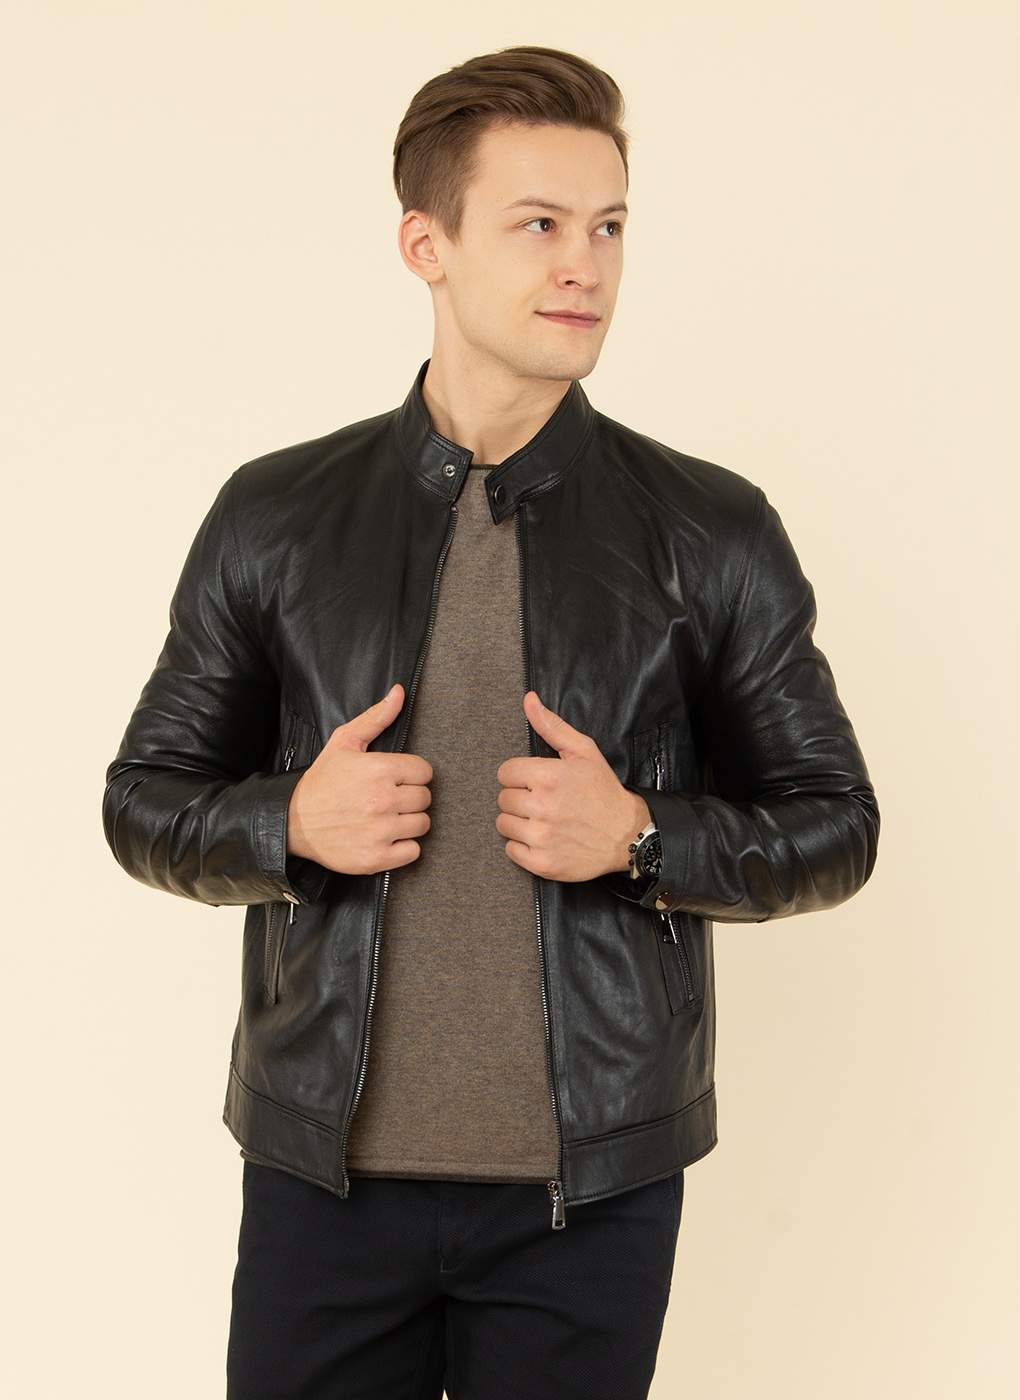 Кожаная куртка мужская Каляев 55055 черная 58 RU